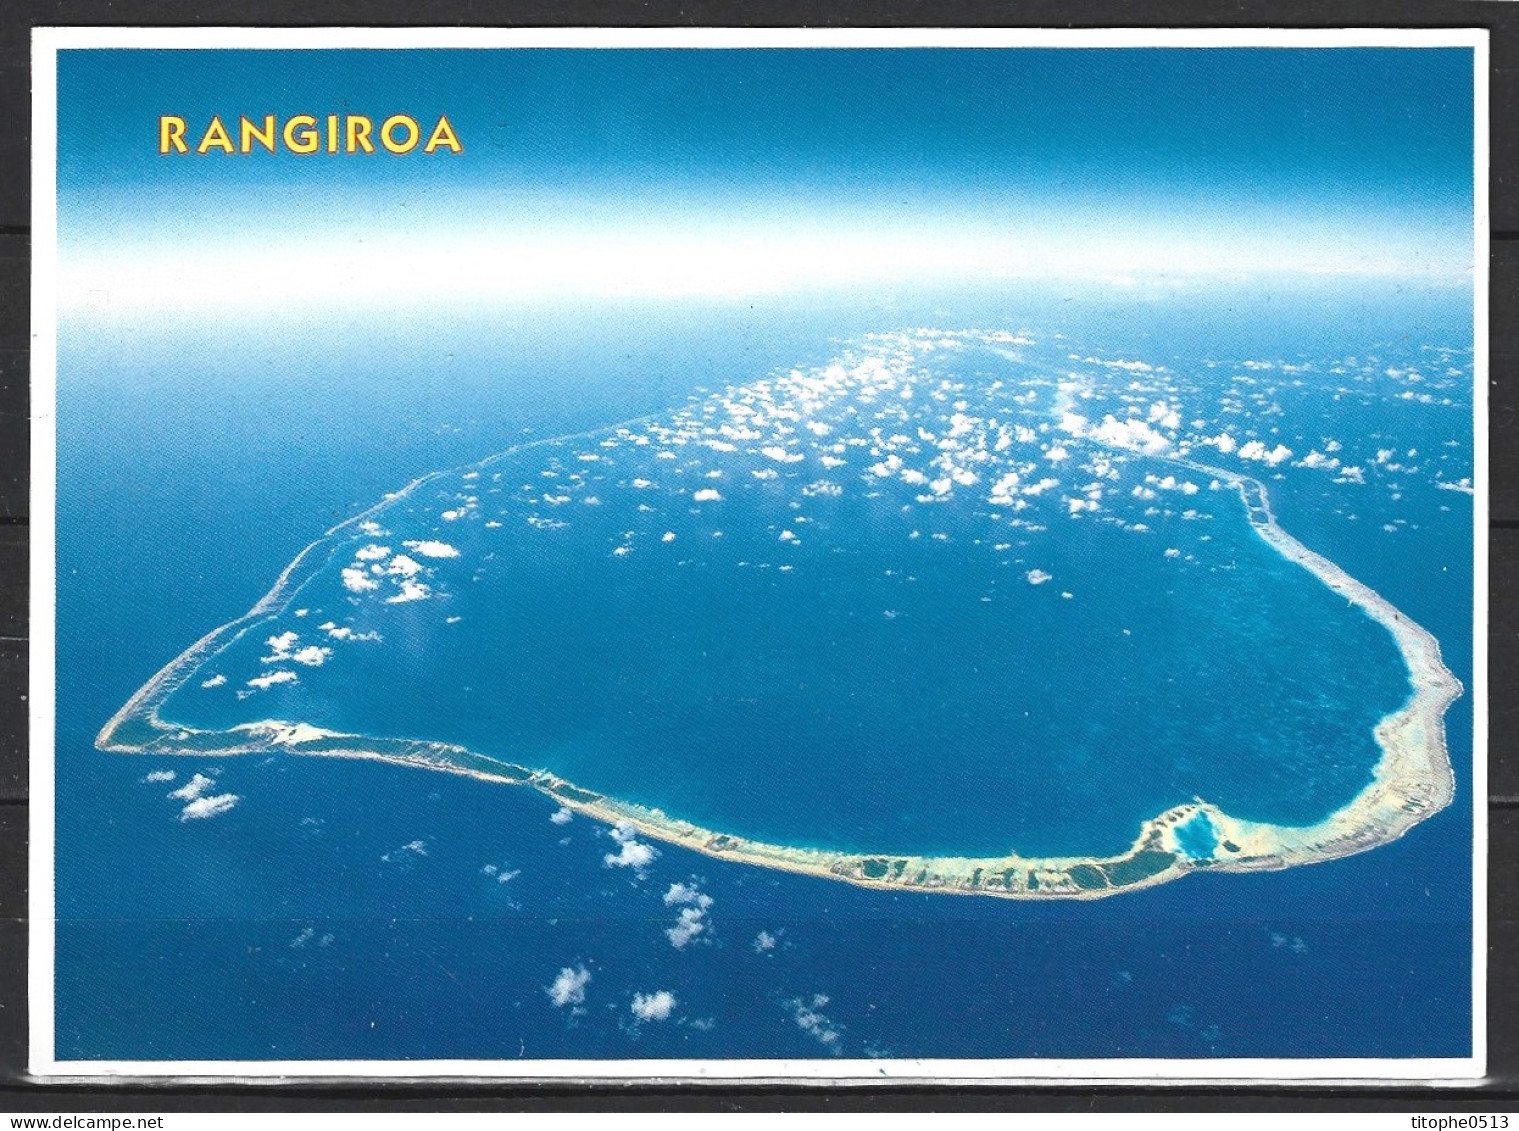 POLYNESIE. Carte Postale écrite. Rangiroa. - Polinesia Francesa